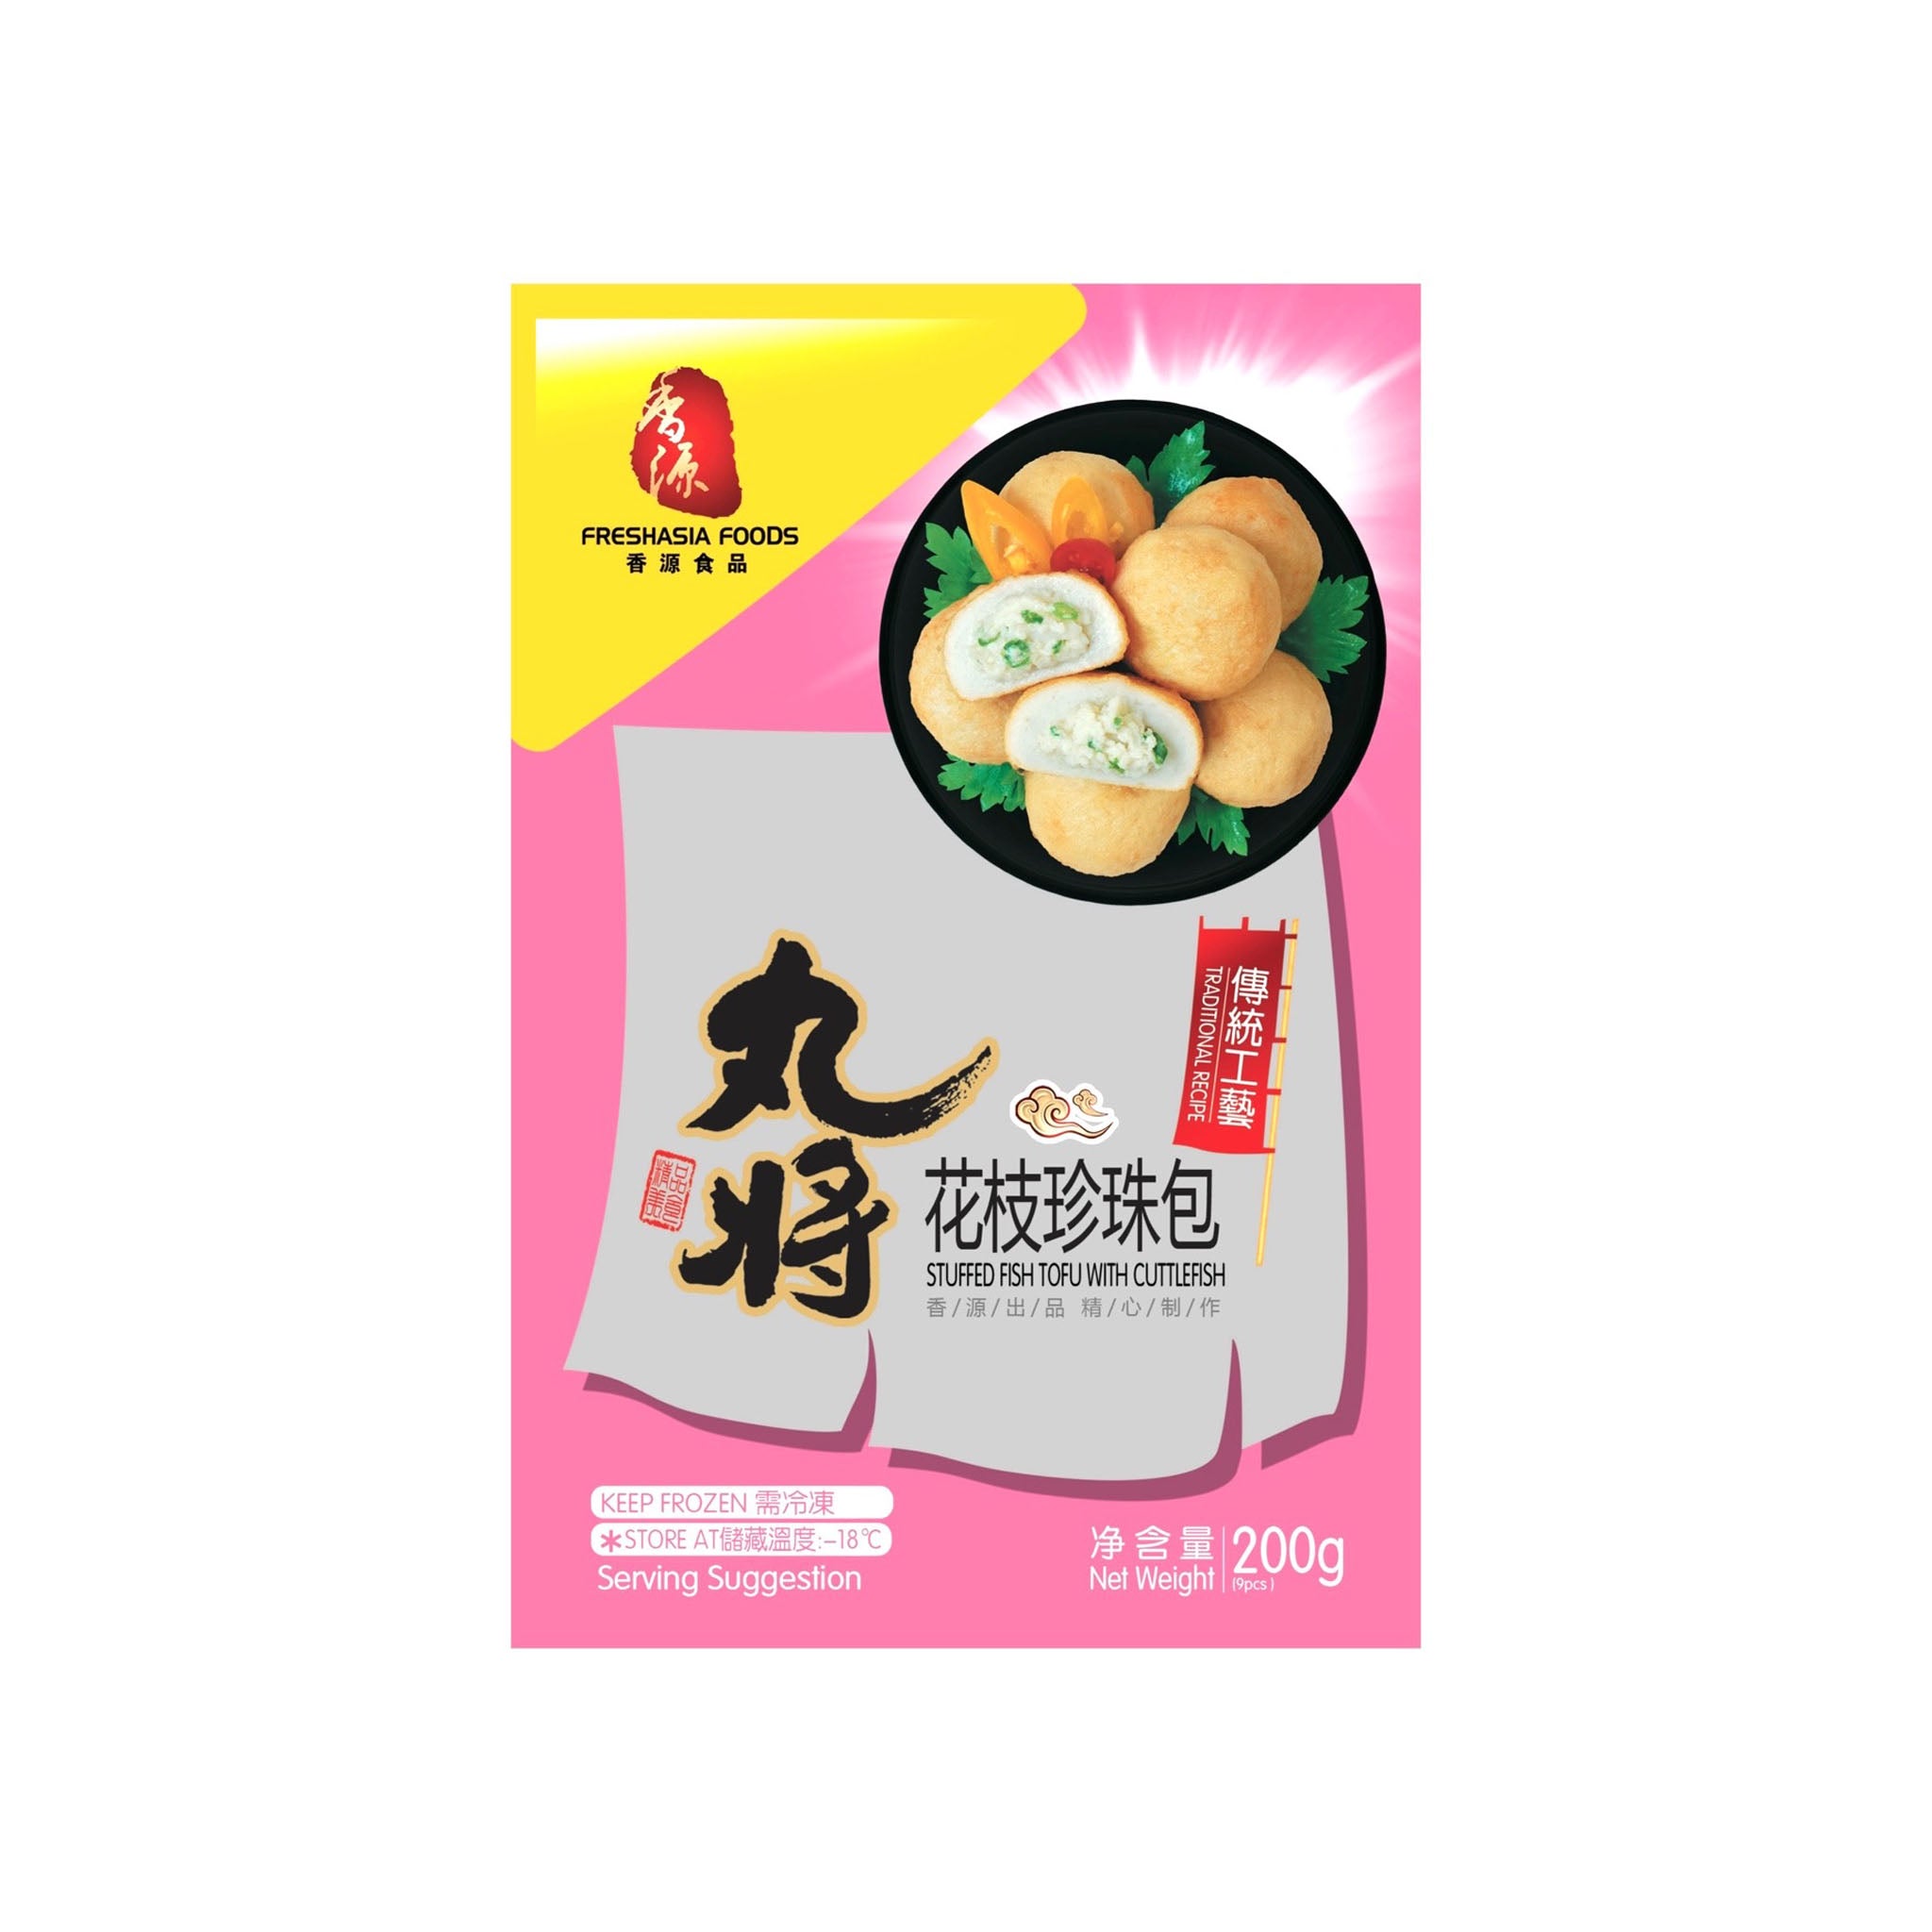 ❄️ 香源 丸将花枝珍珠包 限仓库自取或配送! Stuffed Fish Tofu with Cuttlefish 200g